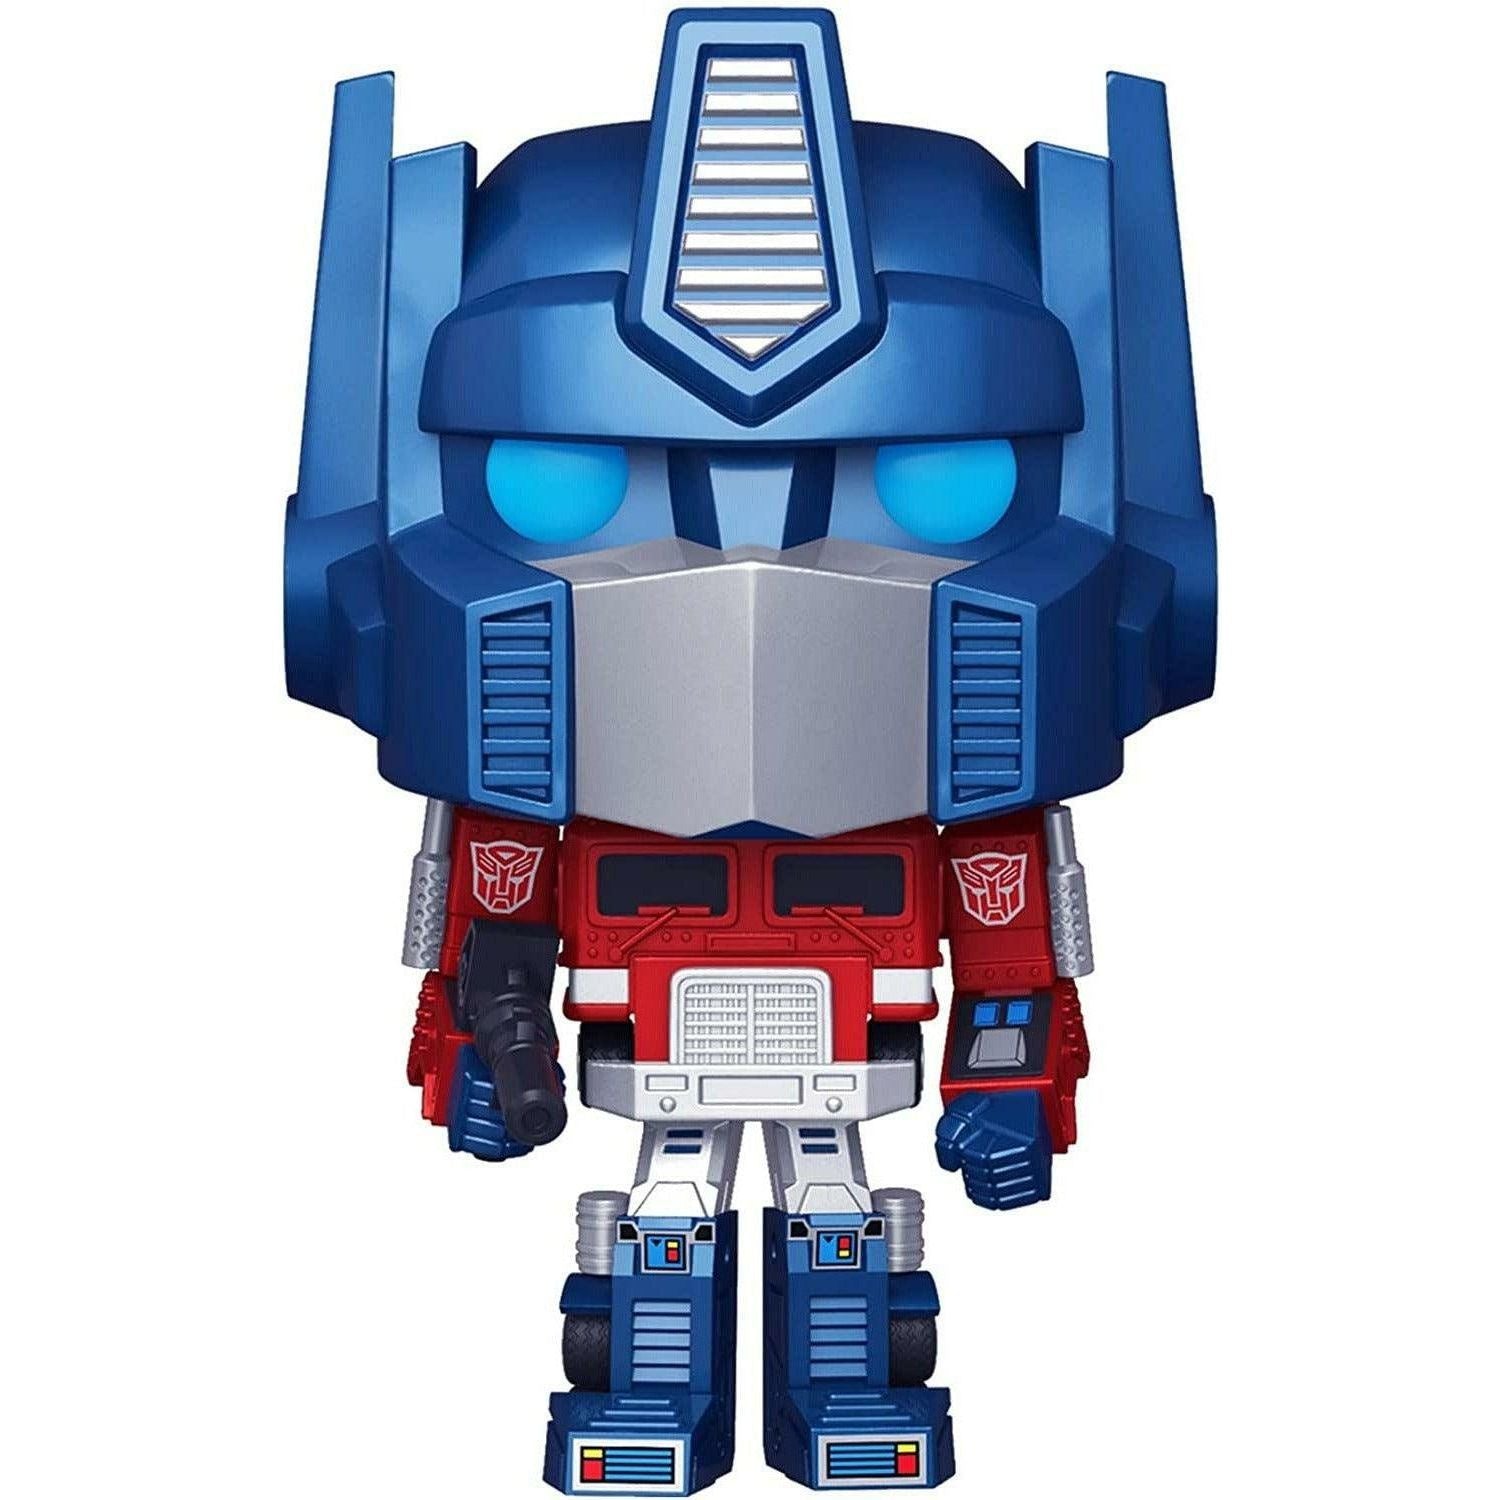 Funko Pop! Retro Toys: Transformers - Metallic Optimus Prime - BumbleToys - 18+, 5-7 Years, Action Figures, Boys, Funko, Pre-Order, Transformers